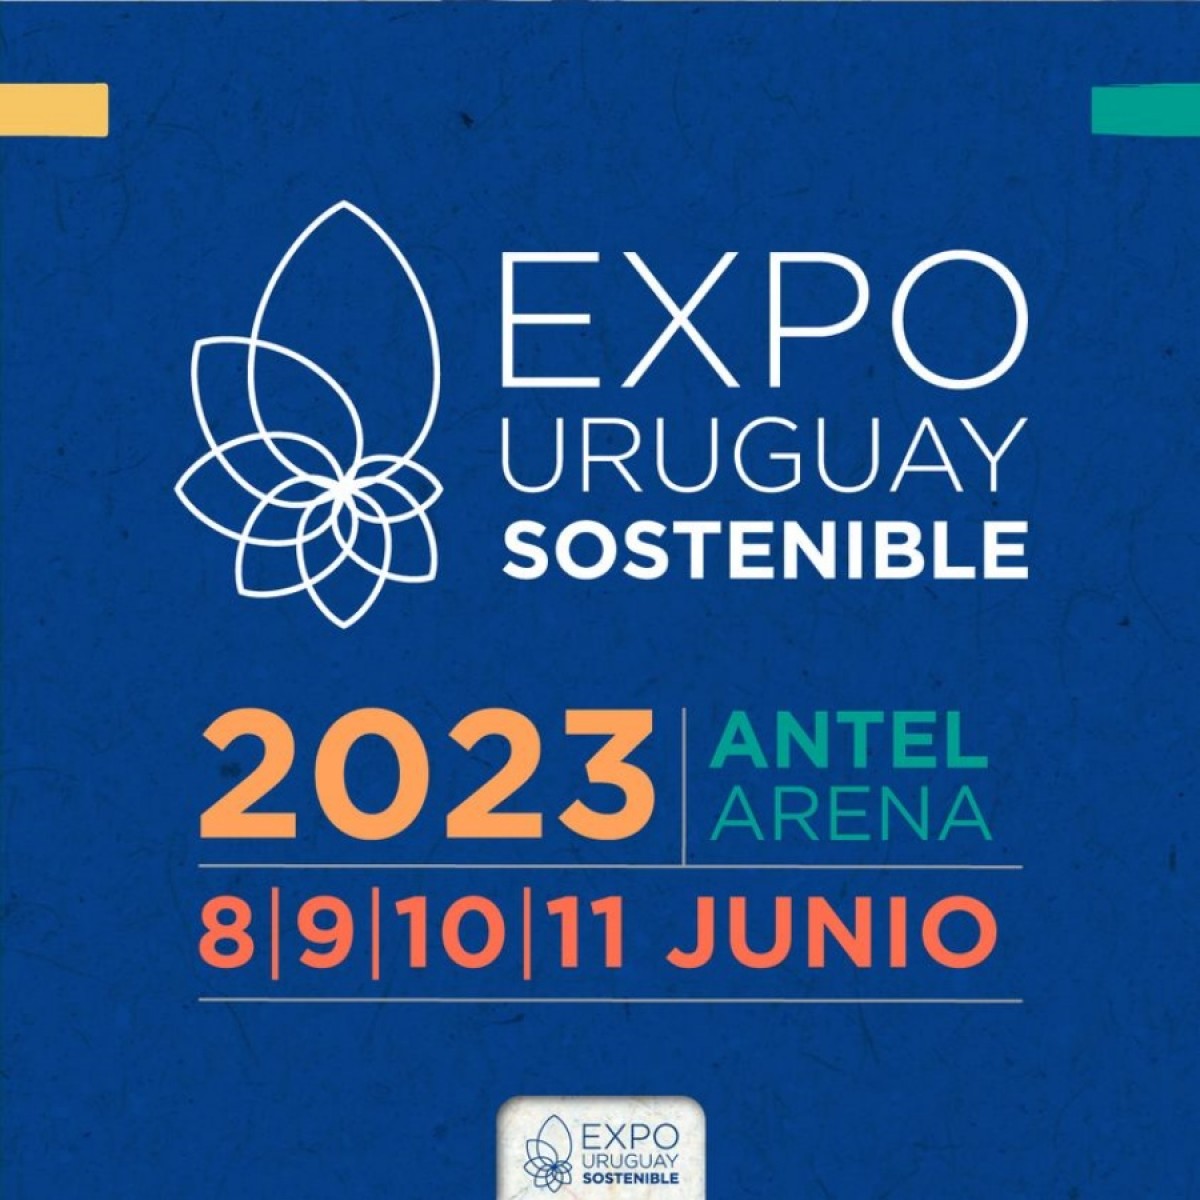 Expo Uruguay Sostenible del 8 al 11 de junio